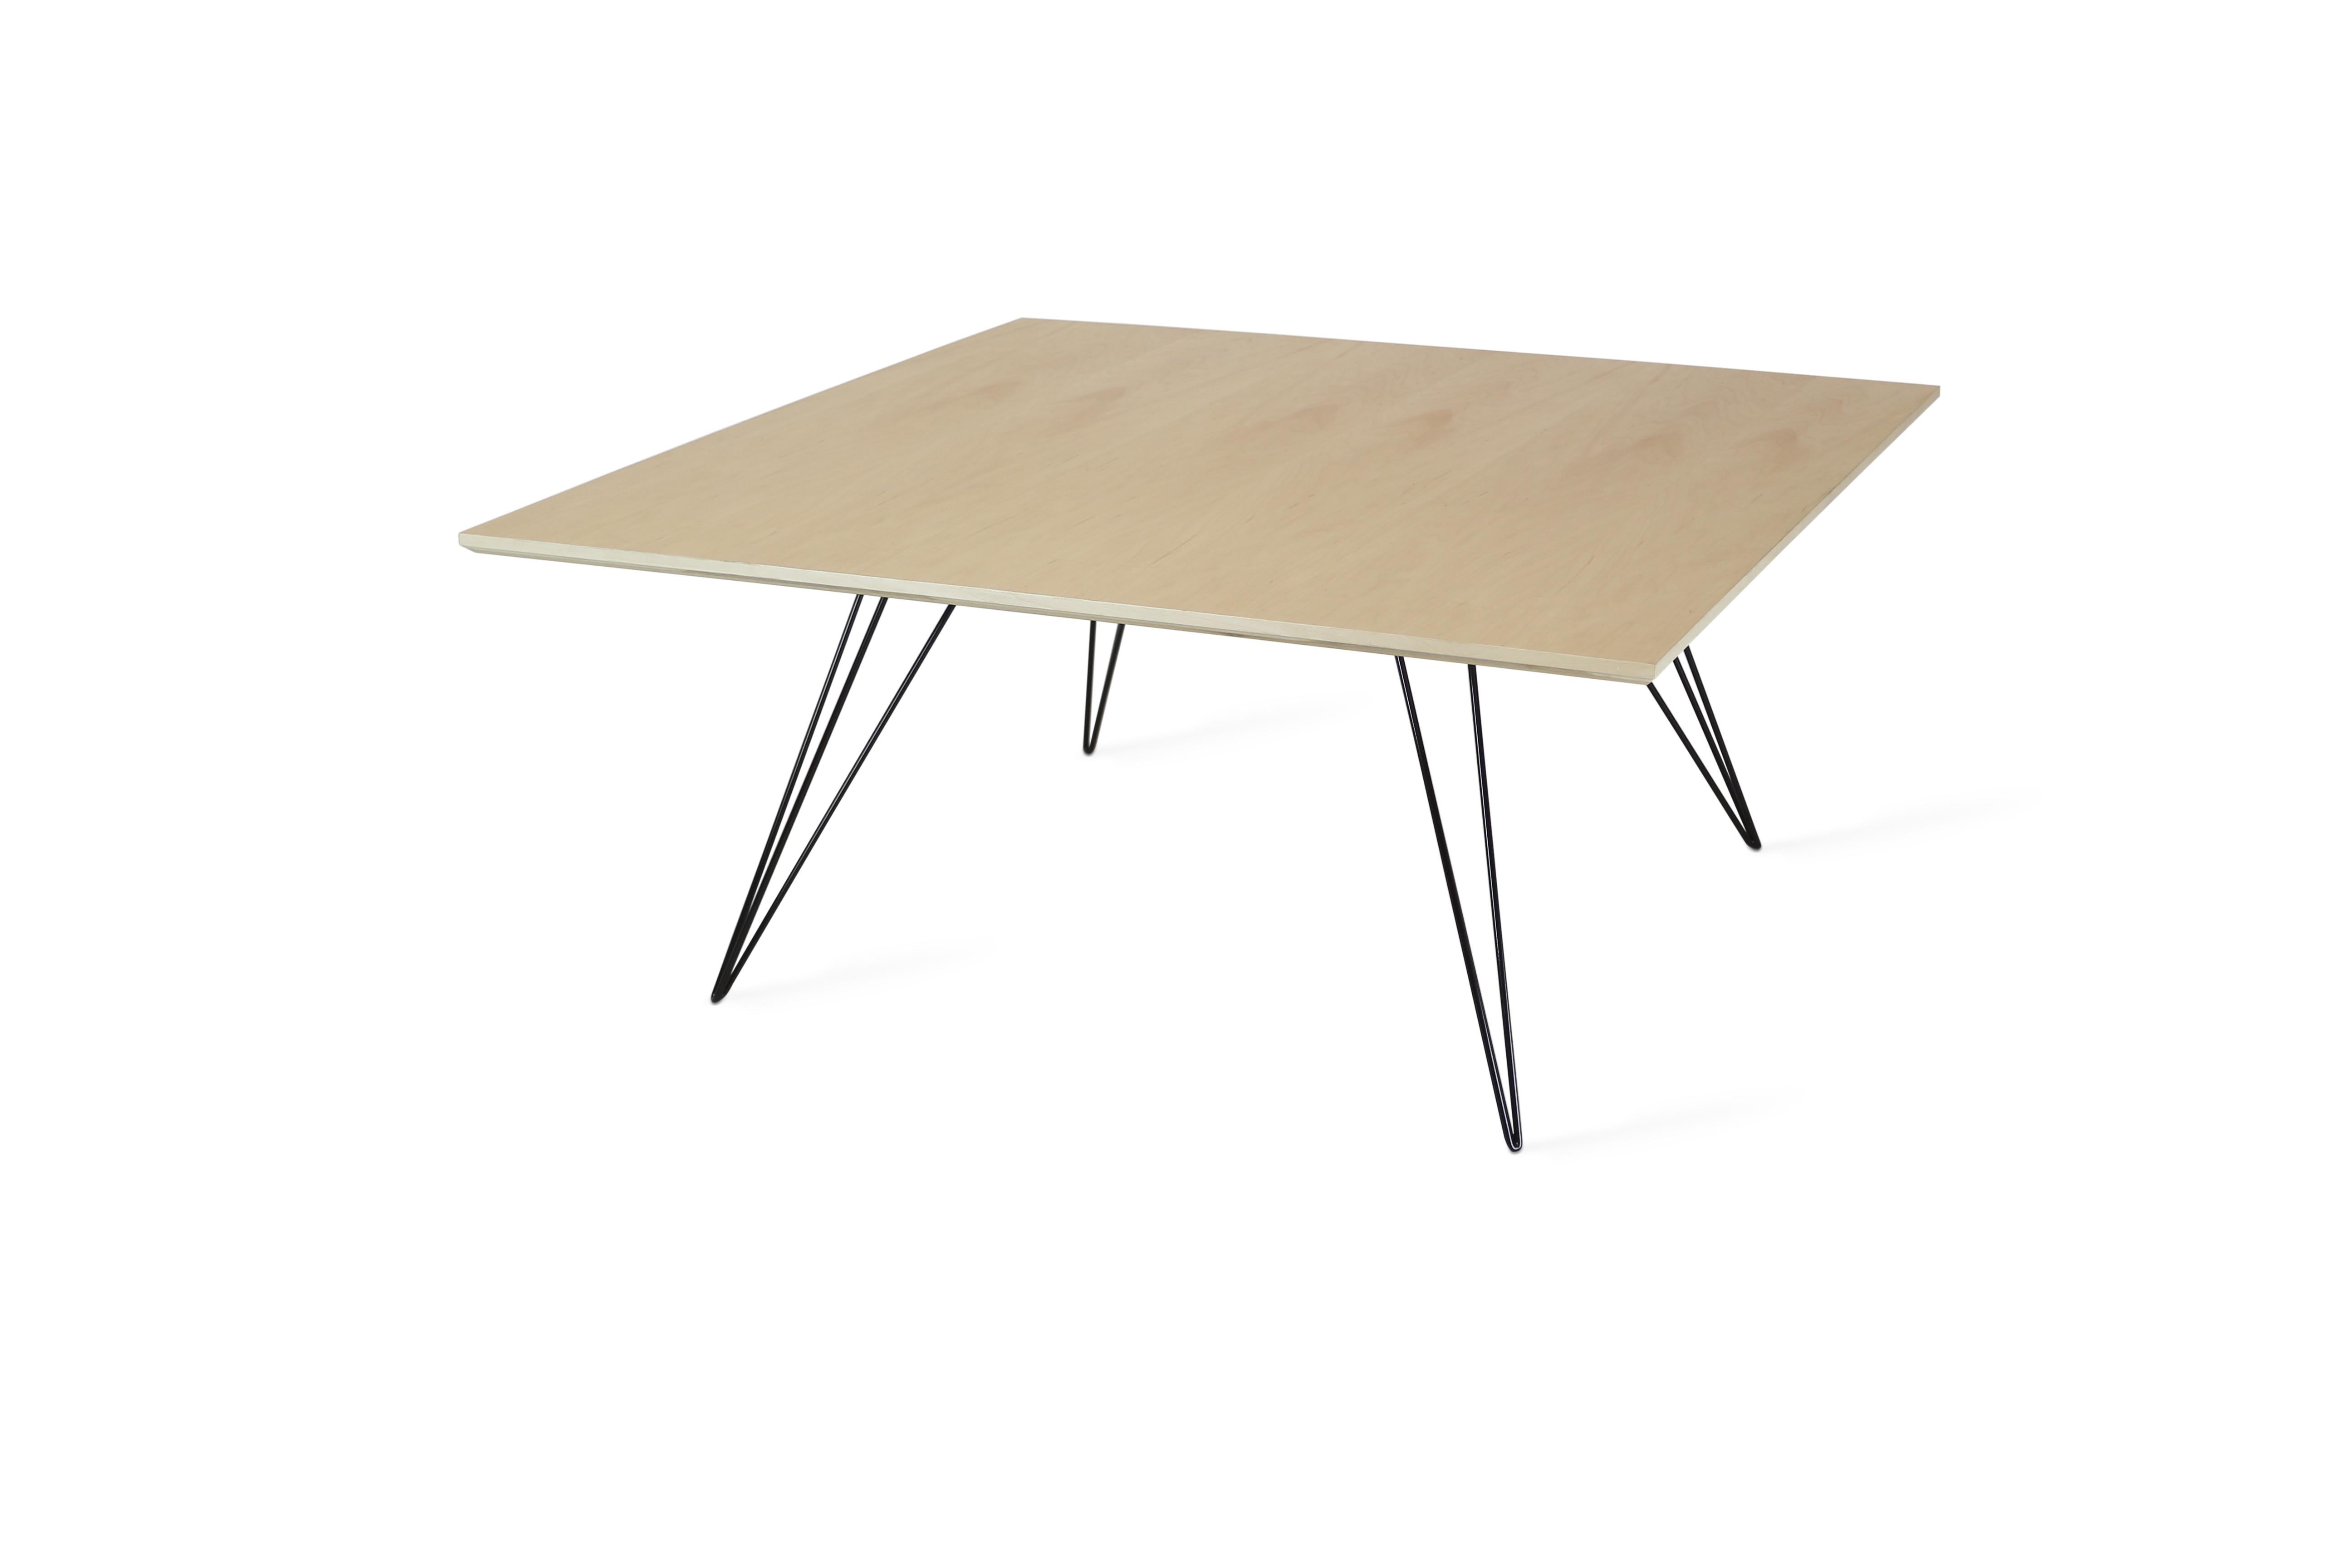 Ein schlanker, eleganter und leichter Tisch, der in Form, Größe und Farbe beliebig angepasst werden kann. Dieses handgefertigte Möbelstück ist eine perfekte Kombination aus industriellen Haarnadelbeinen und einer abgeschrägten Holzplatte. Die